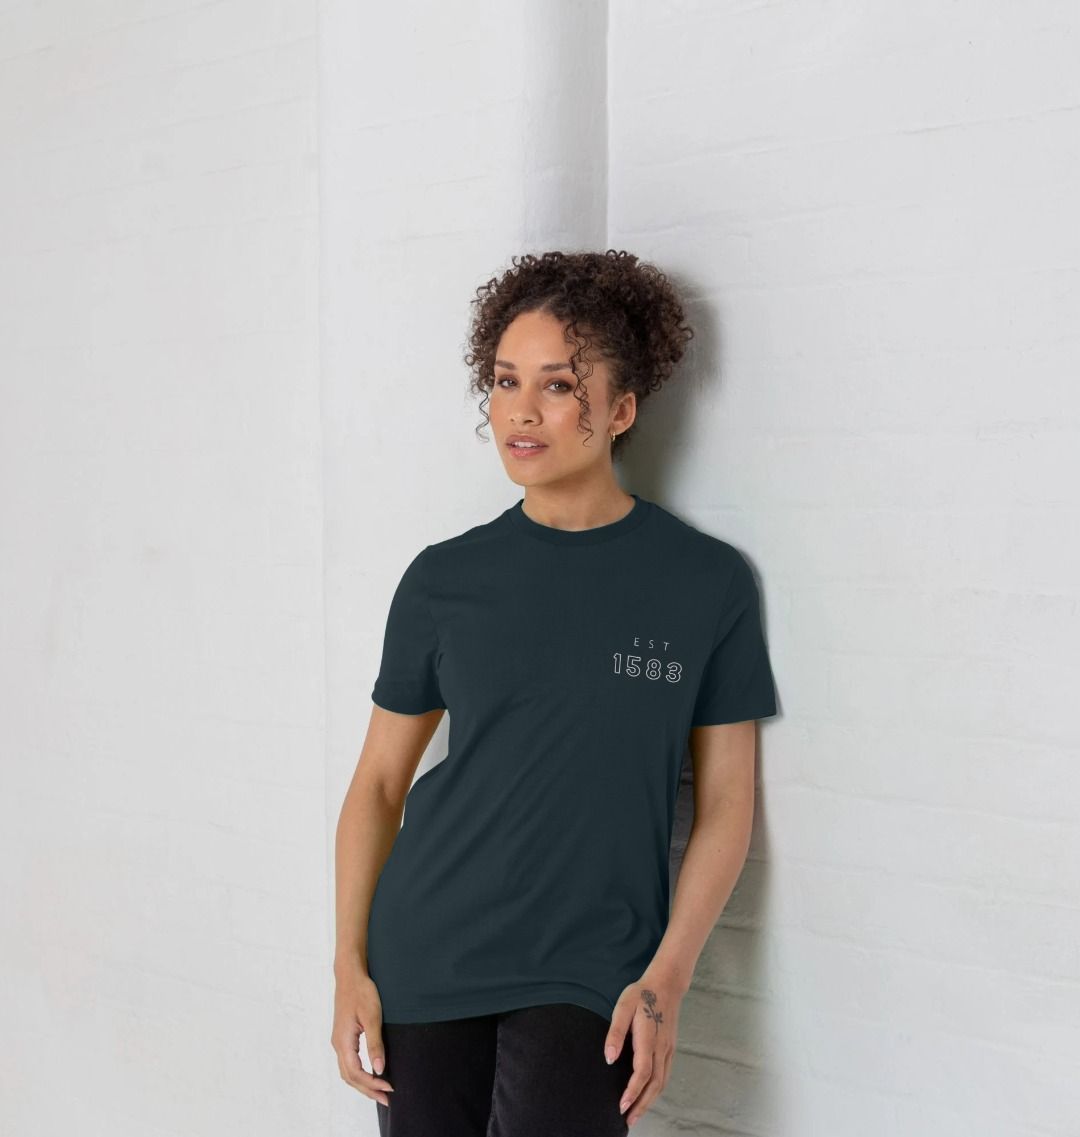 Teviot Row House Coordinates Design T-Shirt